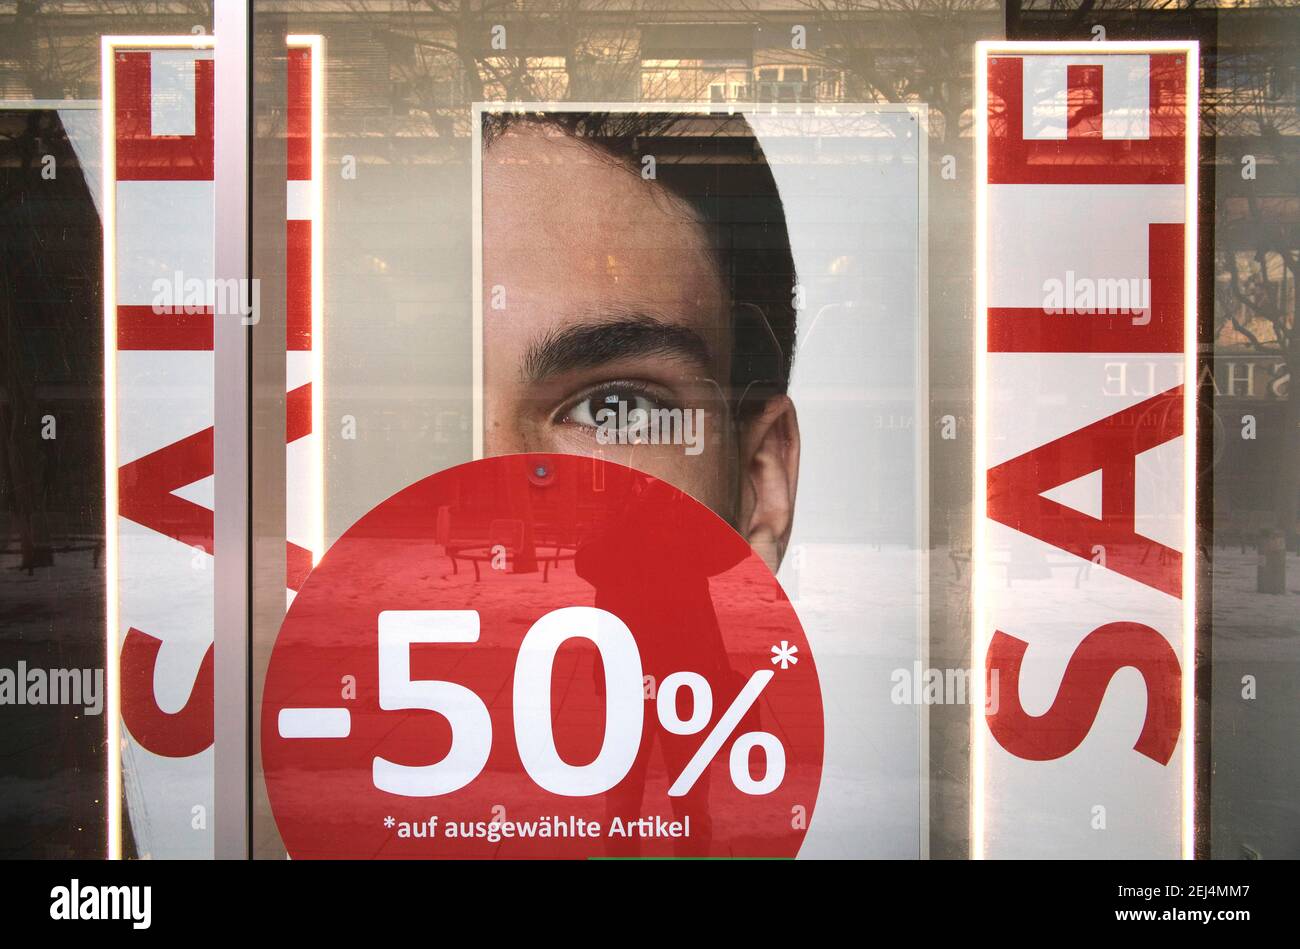 Bataille de rabais dans les vitrines de magasin, VENTE, réductions de prix, crise Corona, Stuttgart, Bade-Wurtemberg, Allemagne Banque D'Images